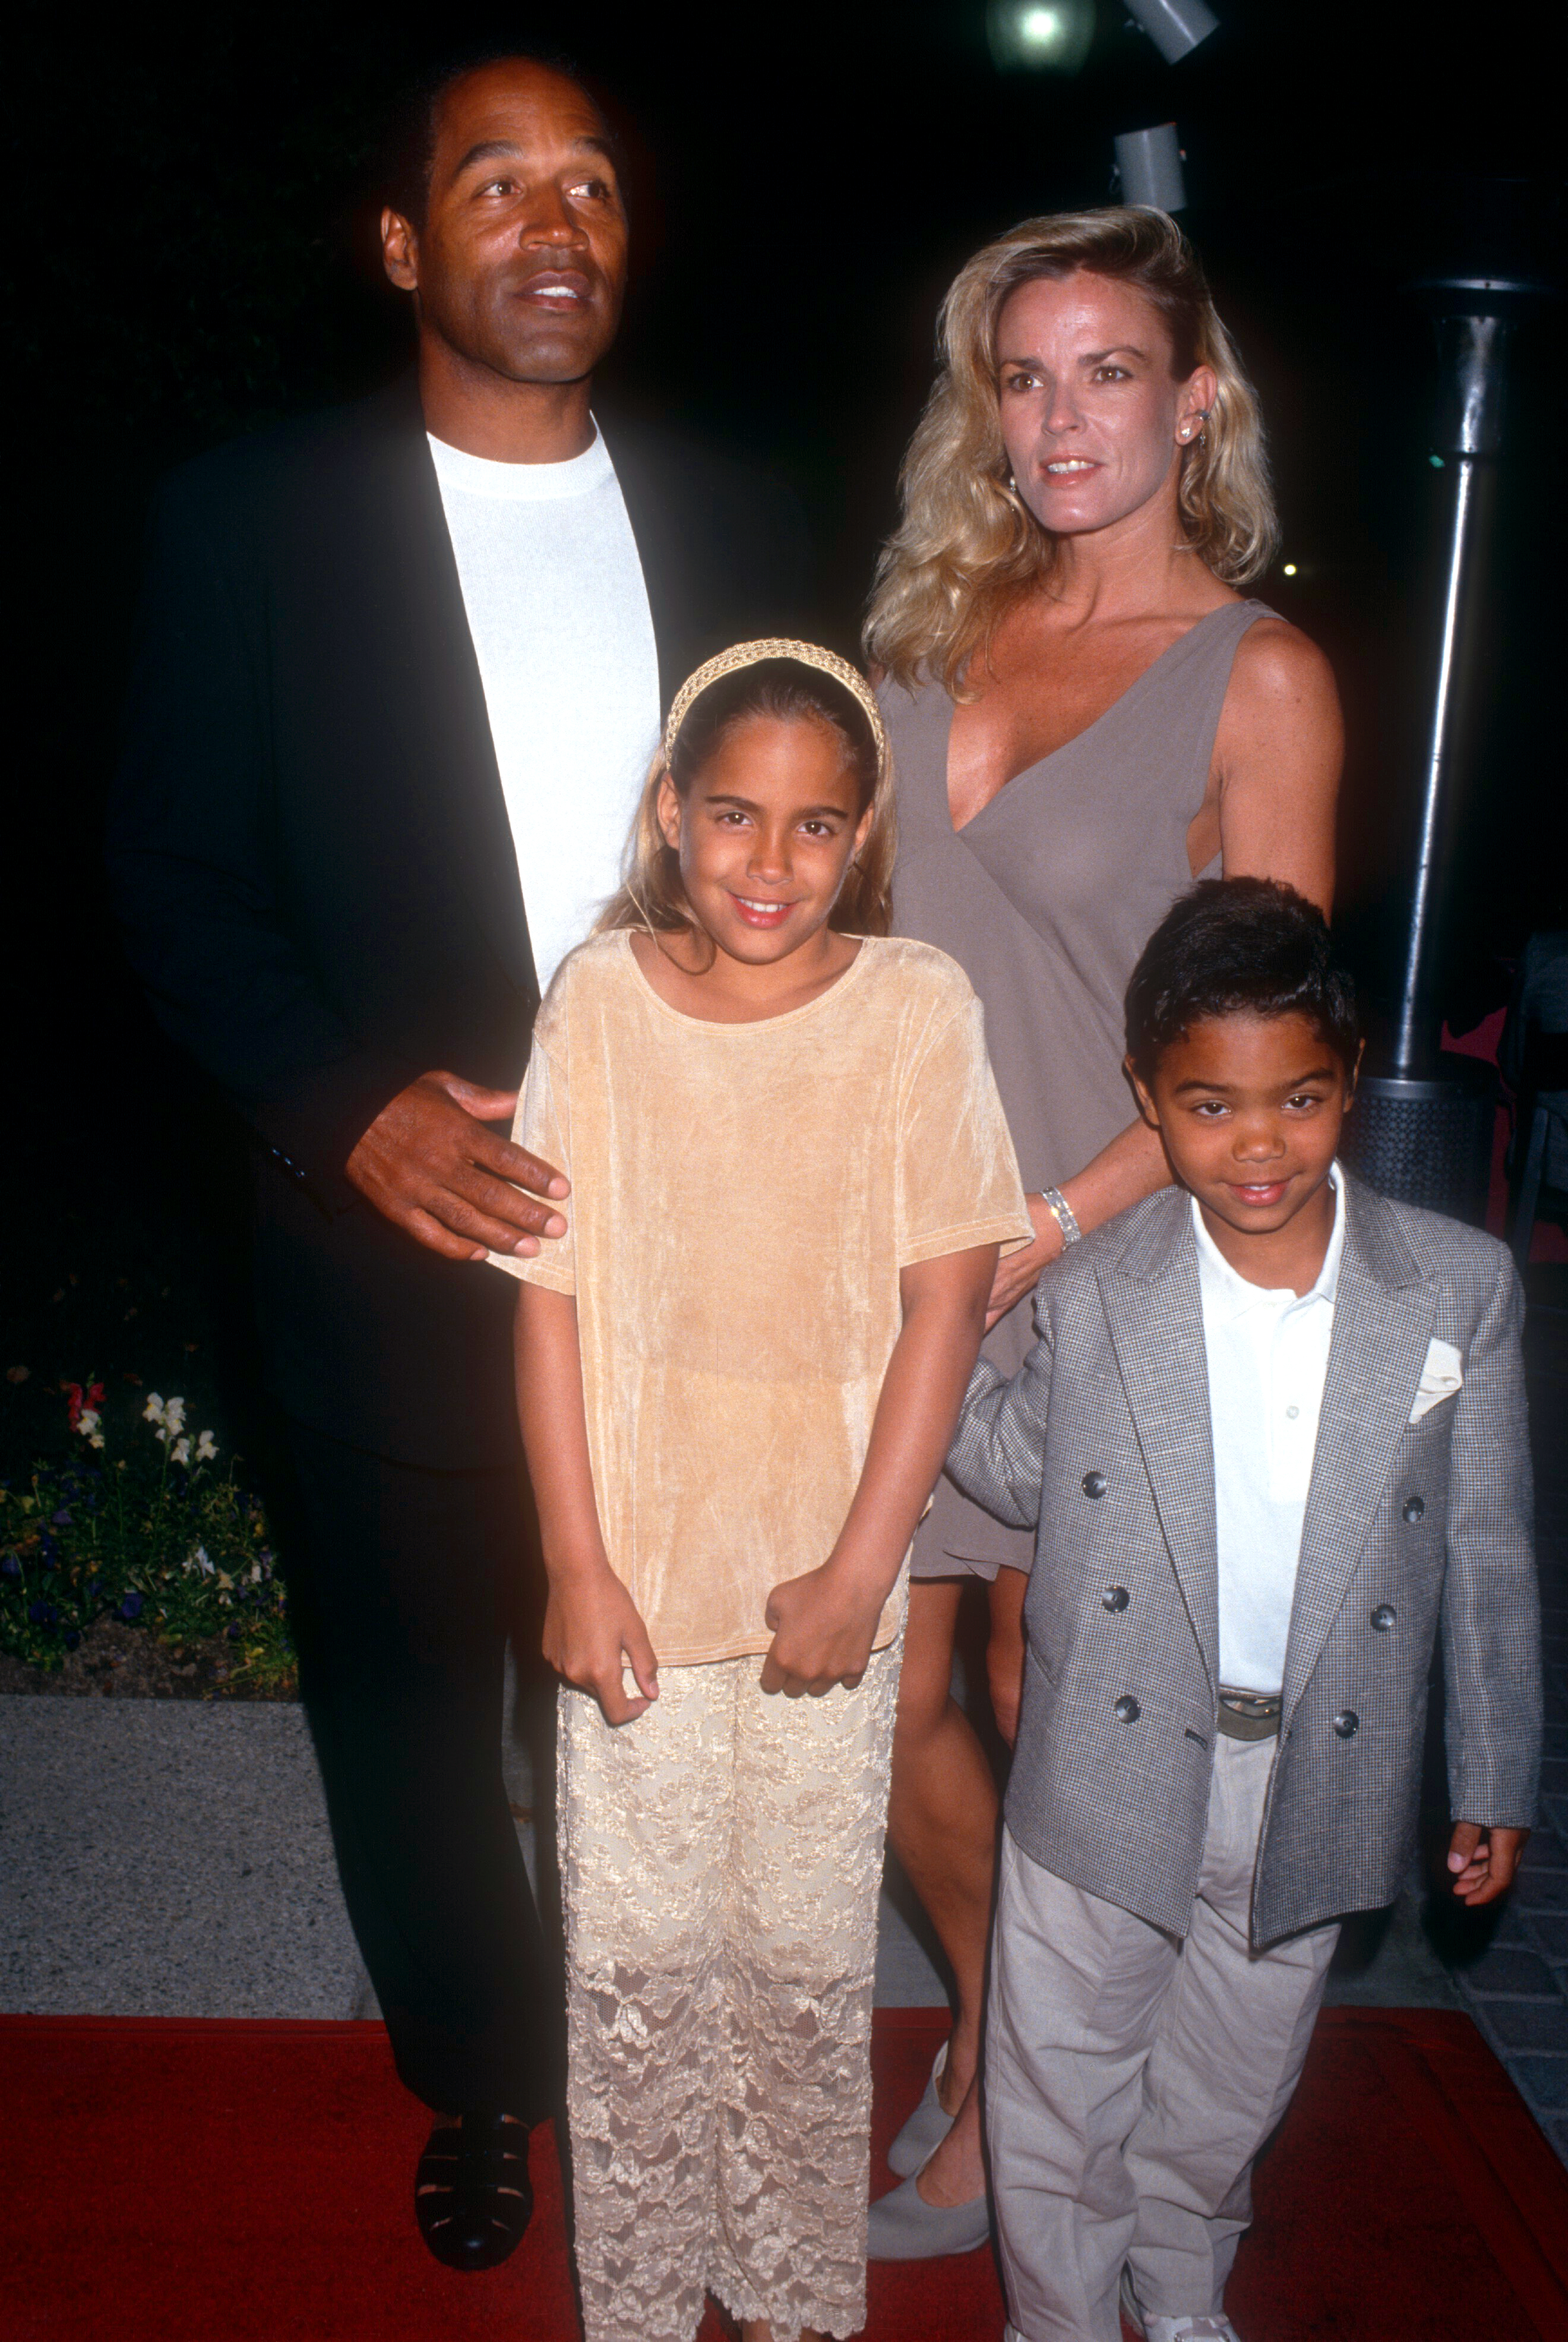 O.J. Simpson y Nicole Brown Simpson caminan por la alfombra roja con sus hijos, Sydney y Justin, mientras asisten al estreno de "Naked Gun 33 1/3: The Final Insult" el 16 de marzo de 1994, en los Estudios Paramount de Hollywood, California | Foto: Getty Images